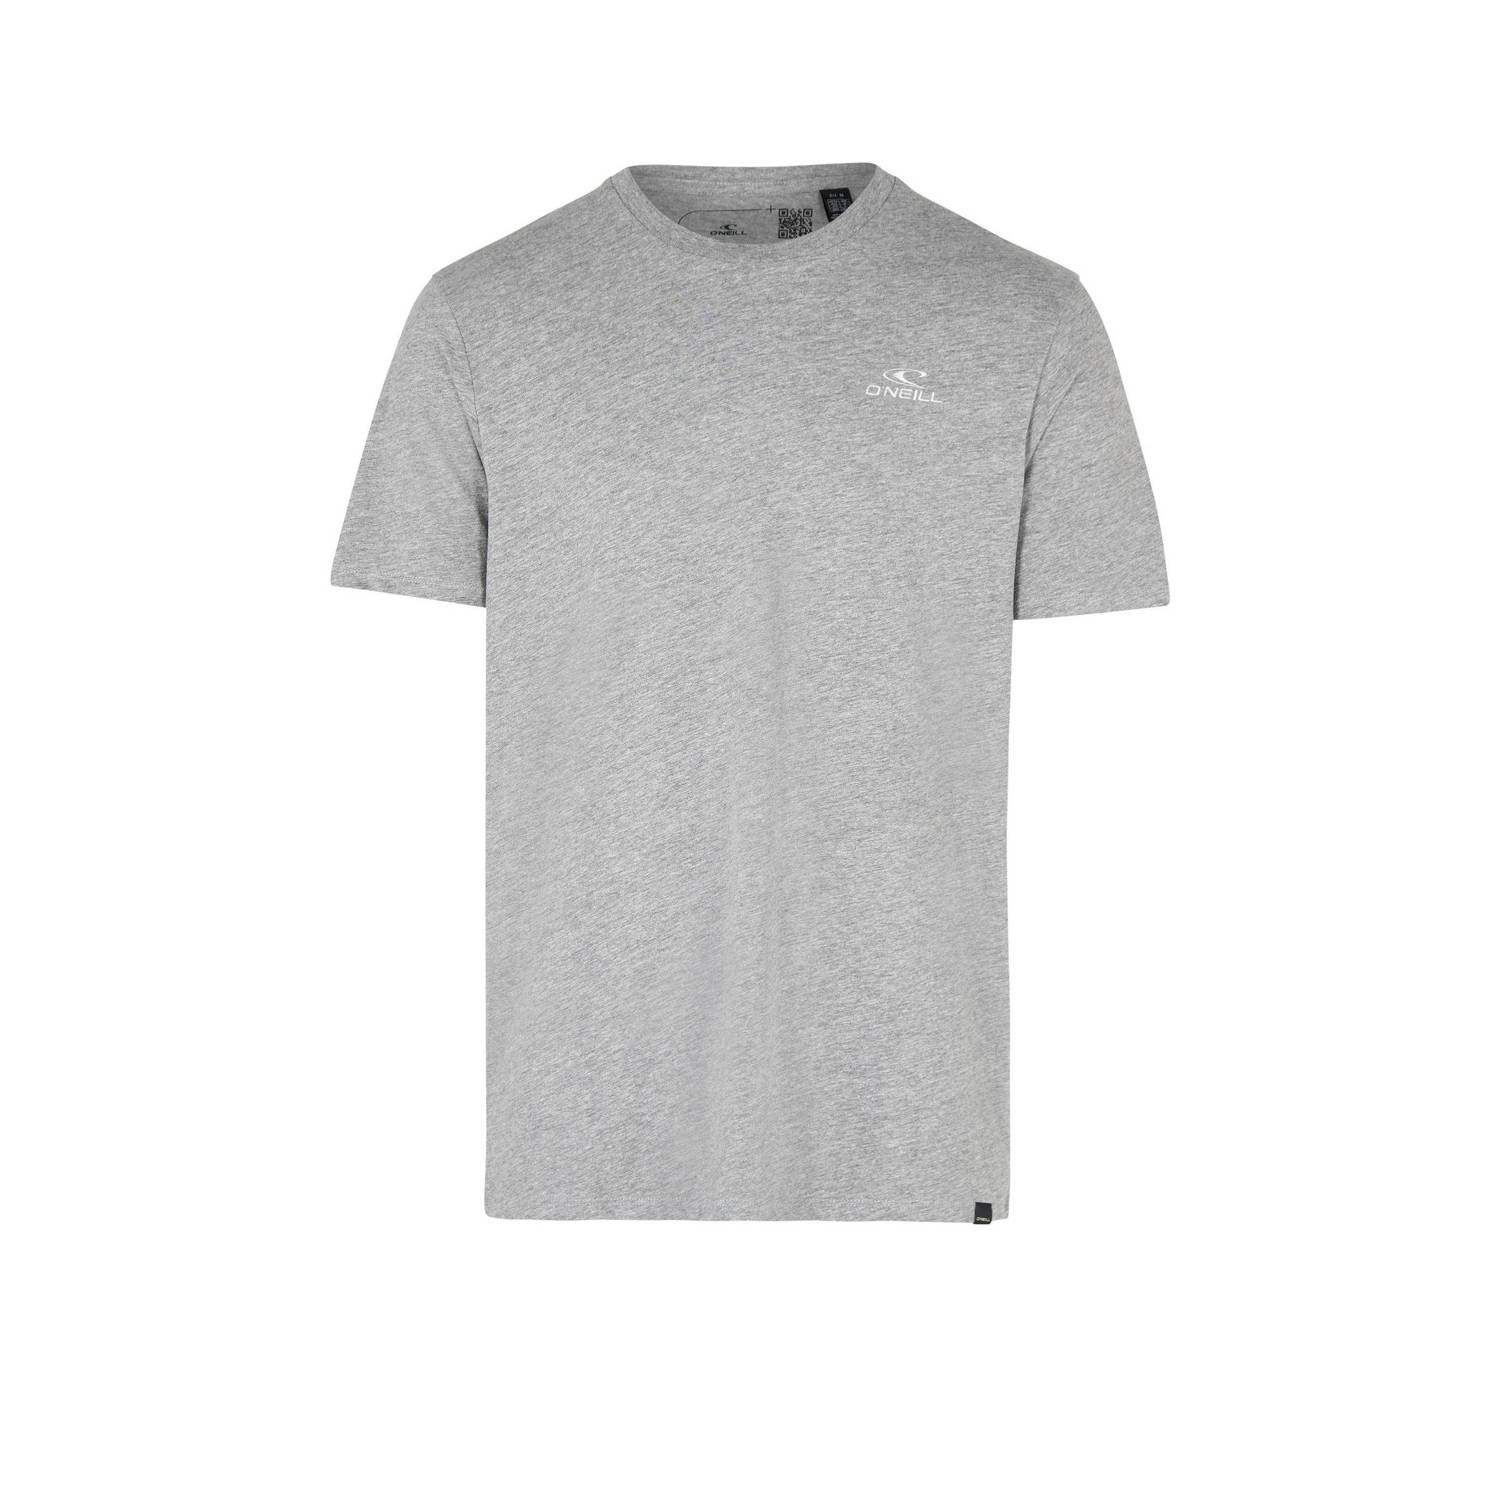 O'Neill T-shirt met logo grijs